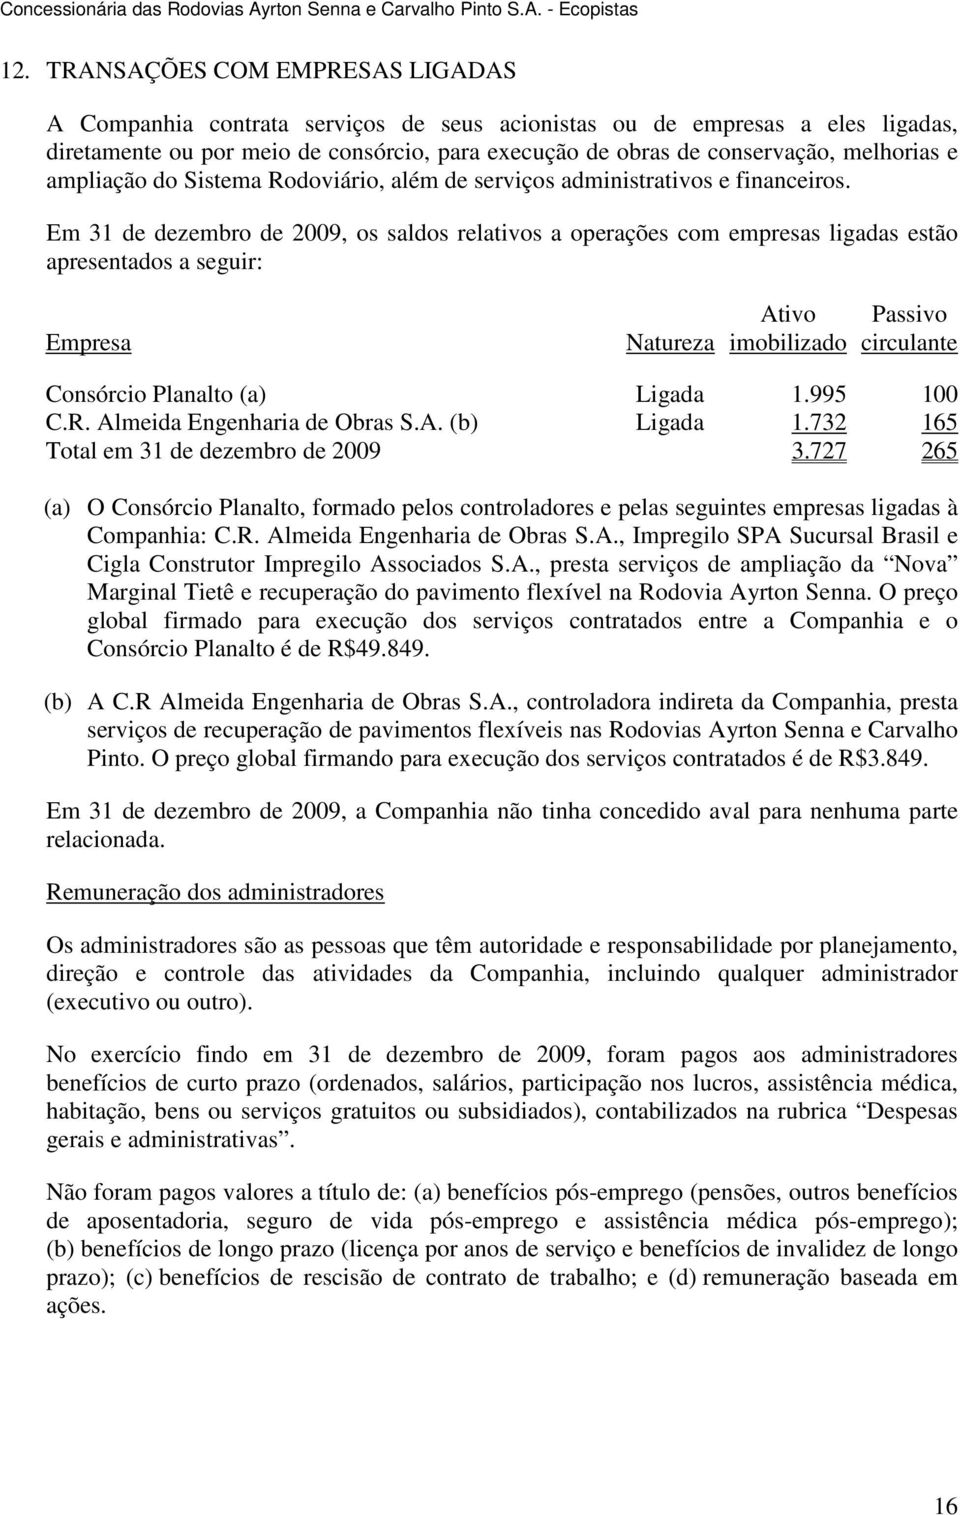 Em 31 de dezembro de, os saldos relativos a operações com empresas ligadas estão apresentados a seguir: Empresa Natureza Ativo imobilizado Passivo circulante Consórcio Planalto (a) Ligada 1.995 100 C.